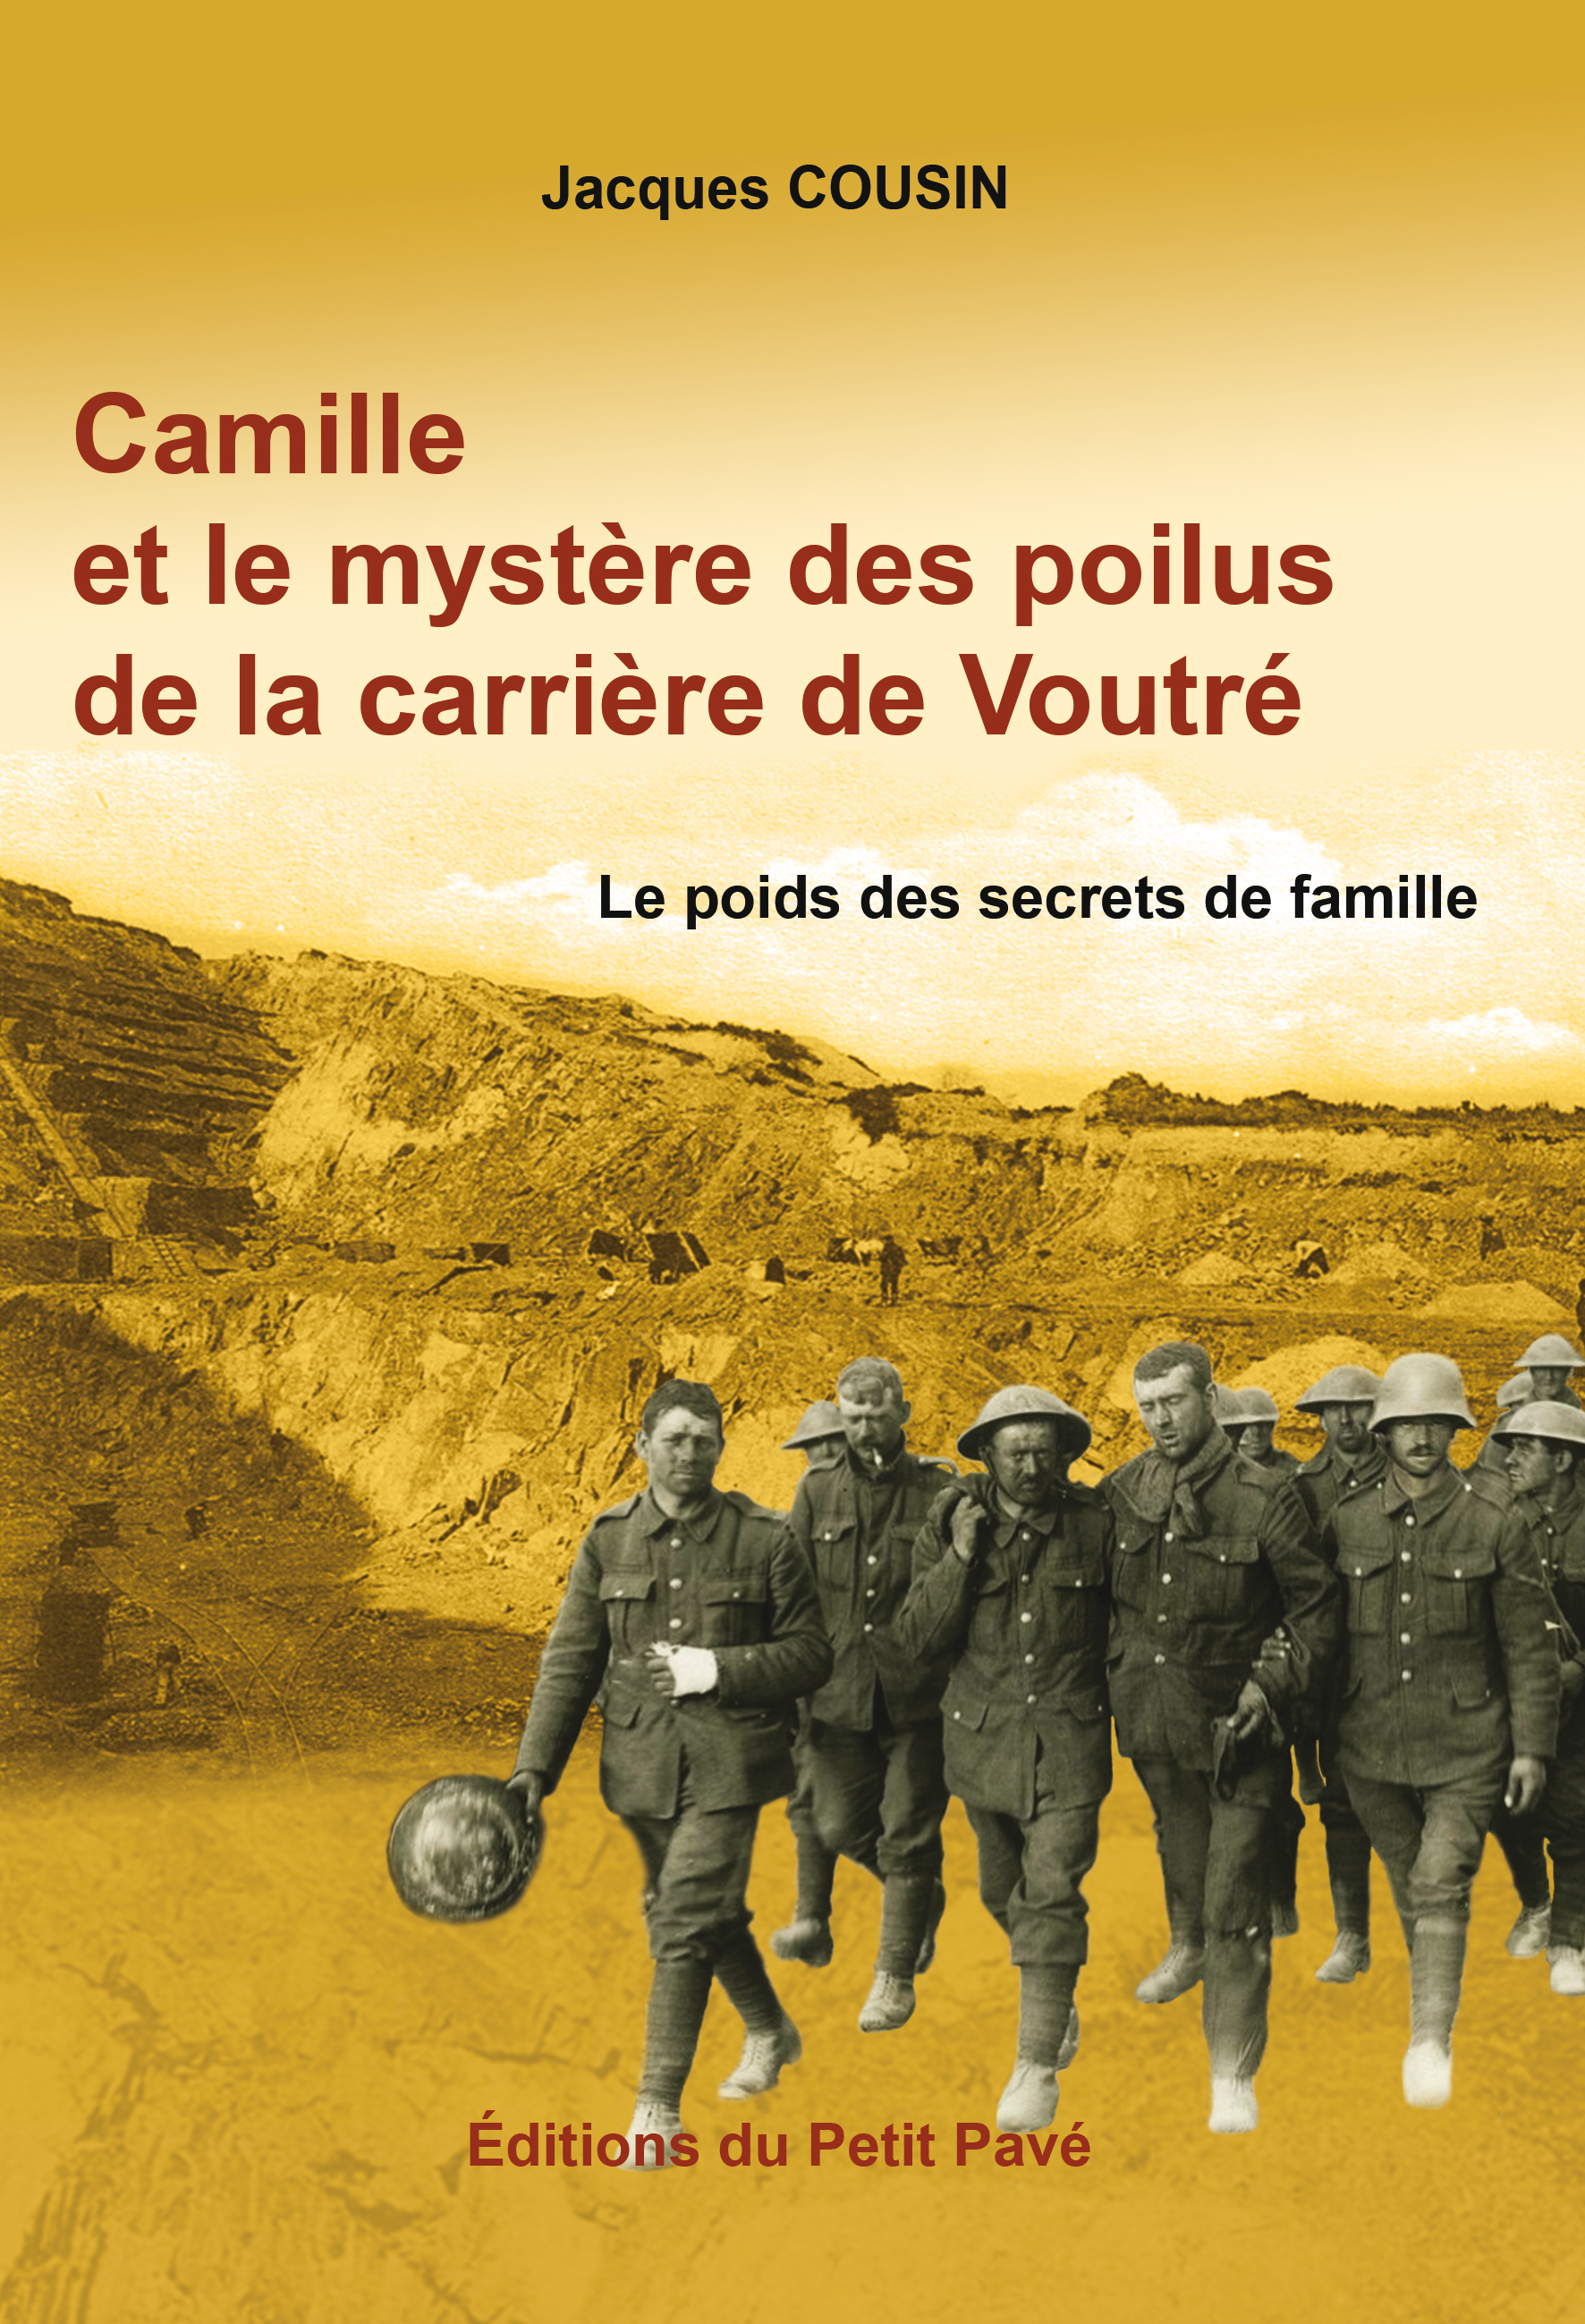 Camille et le mystère des poilus de la carrière de Voutré - Photo camille.jpg